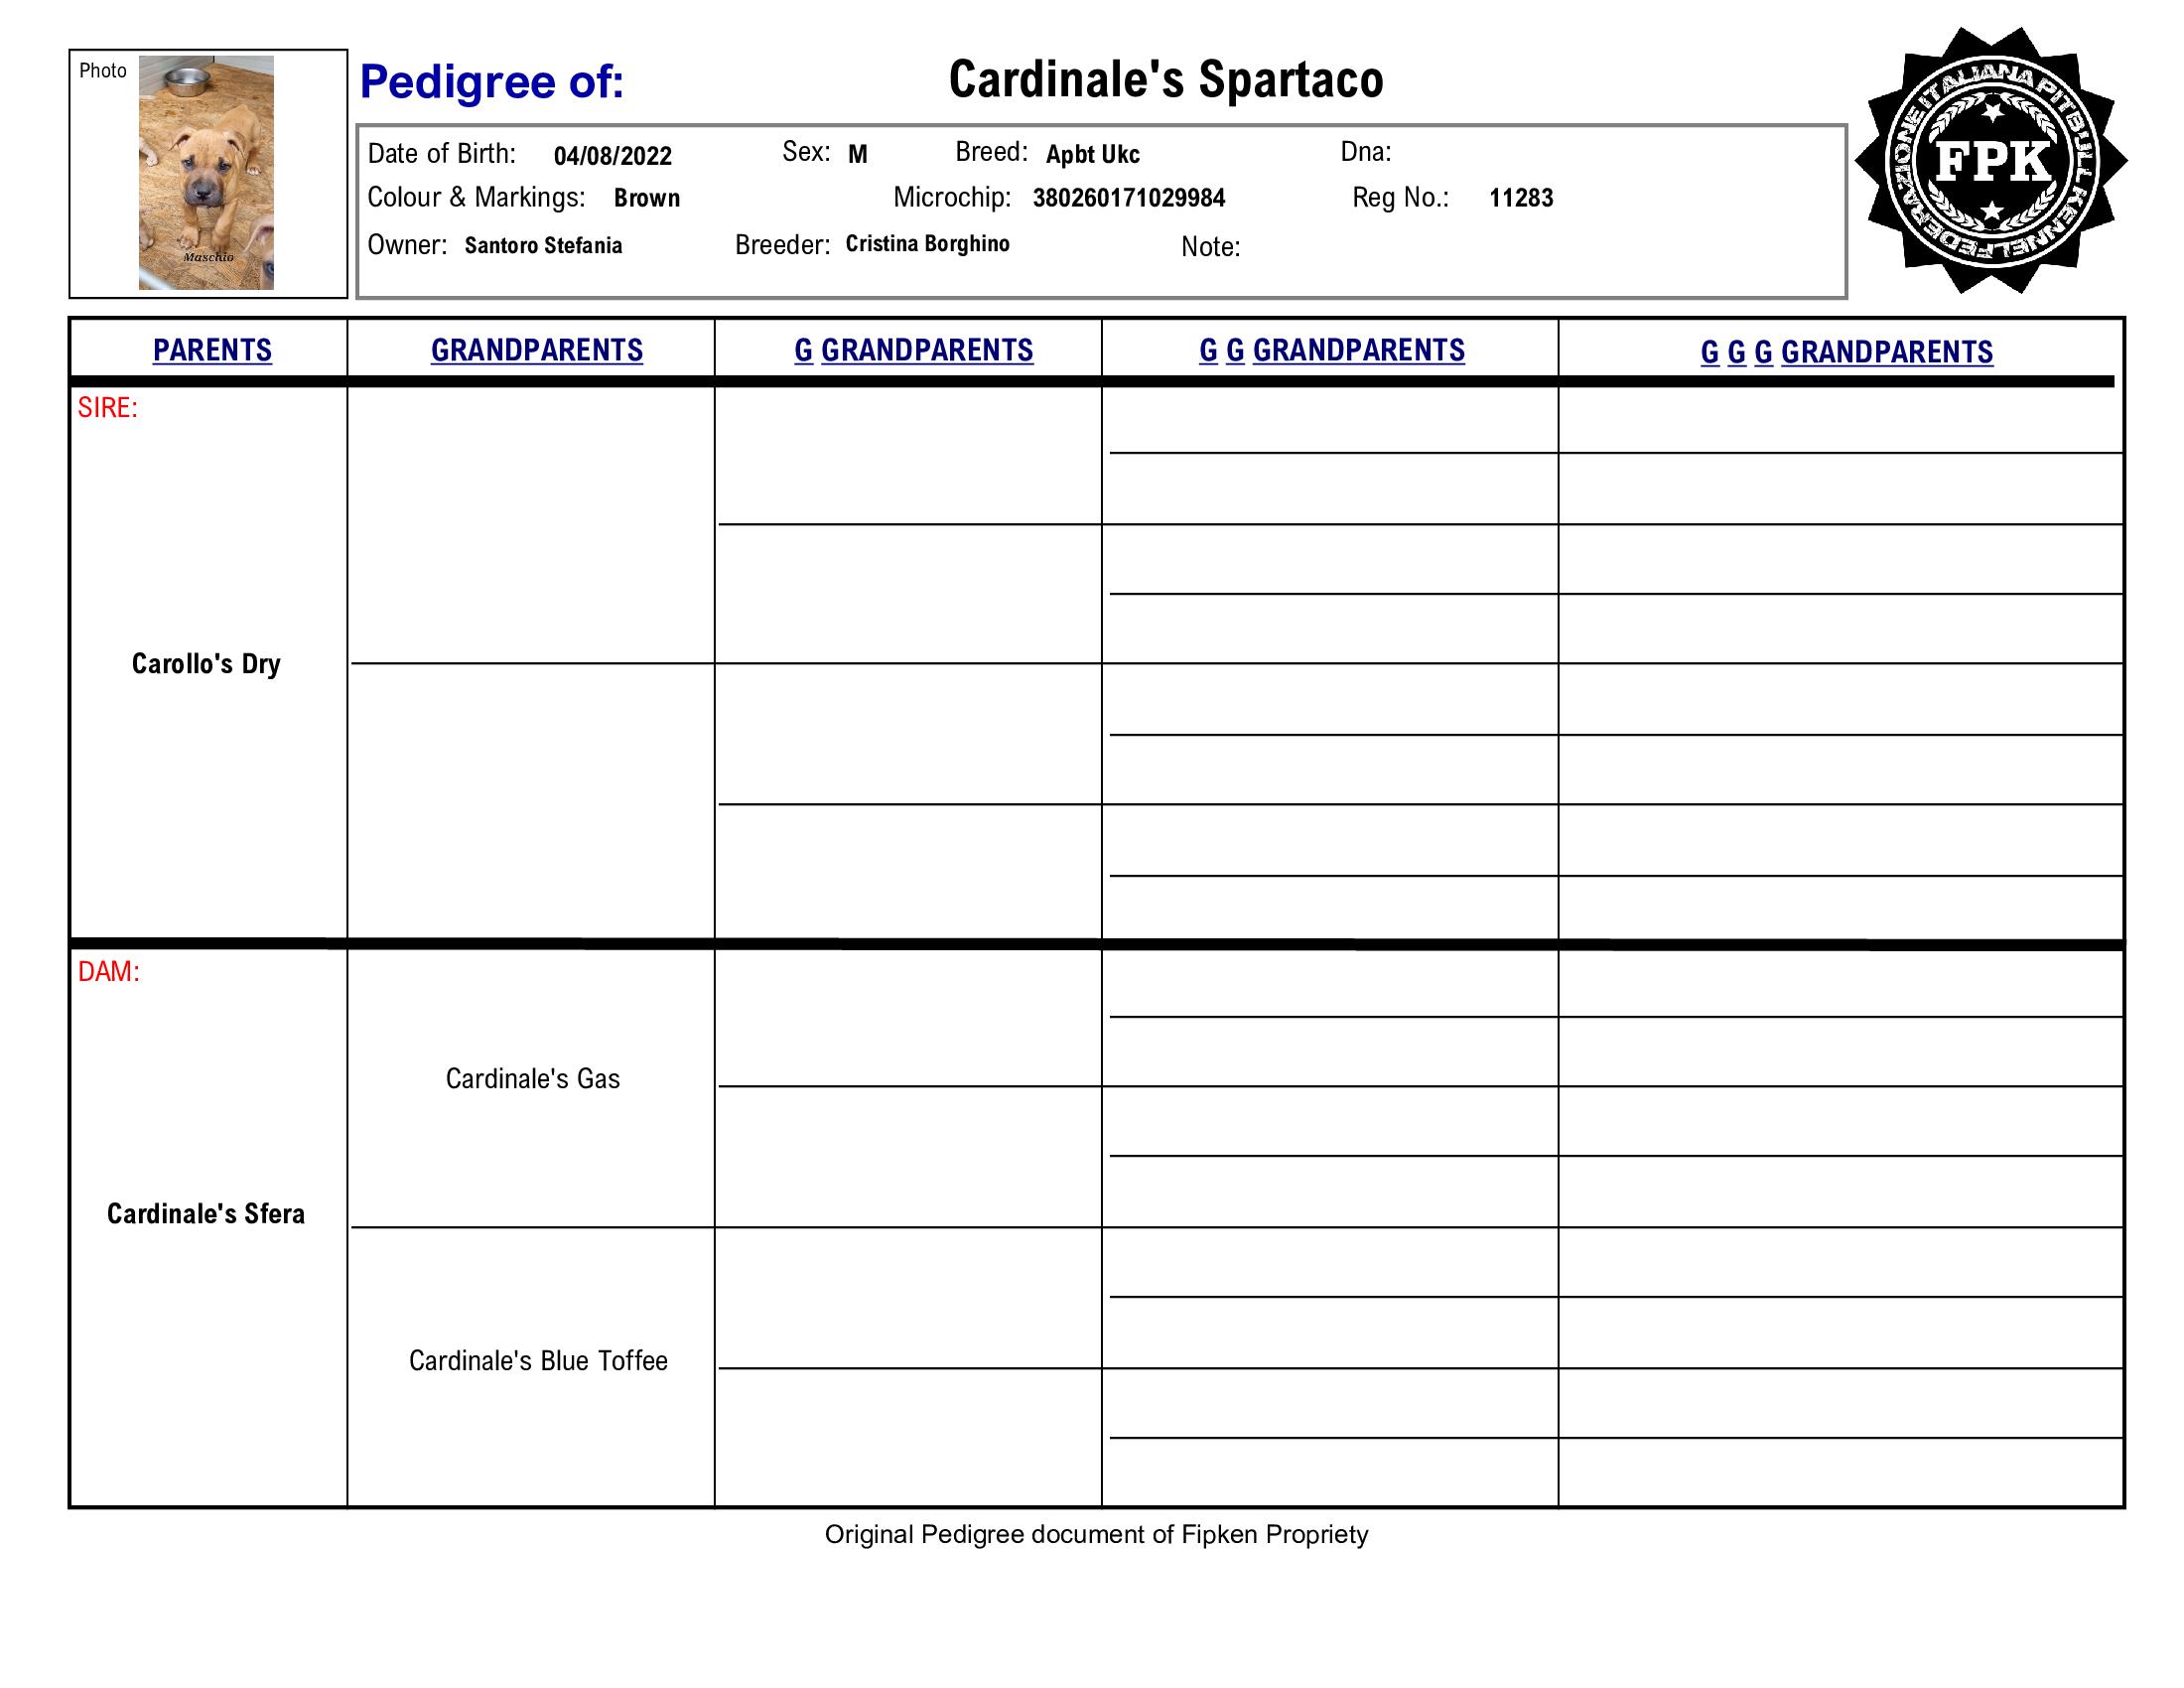 Cardinale's Spartaco